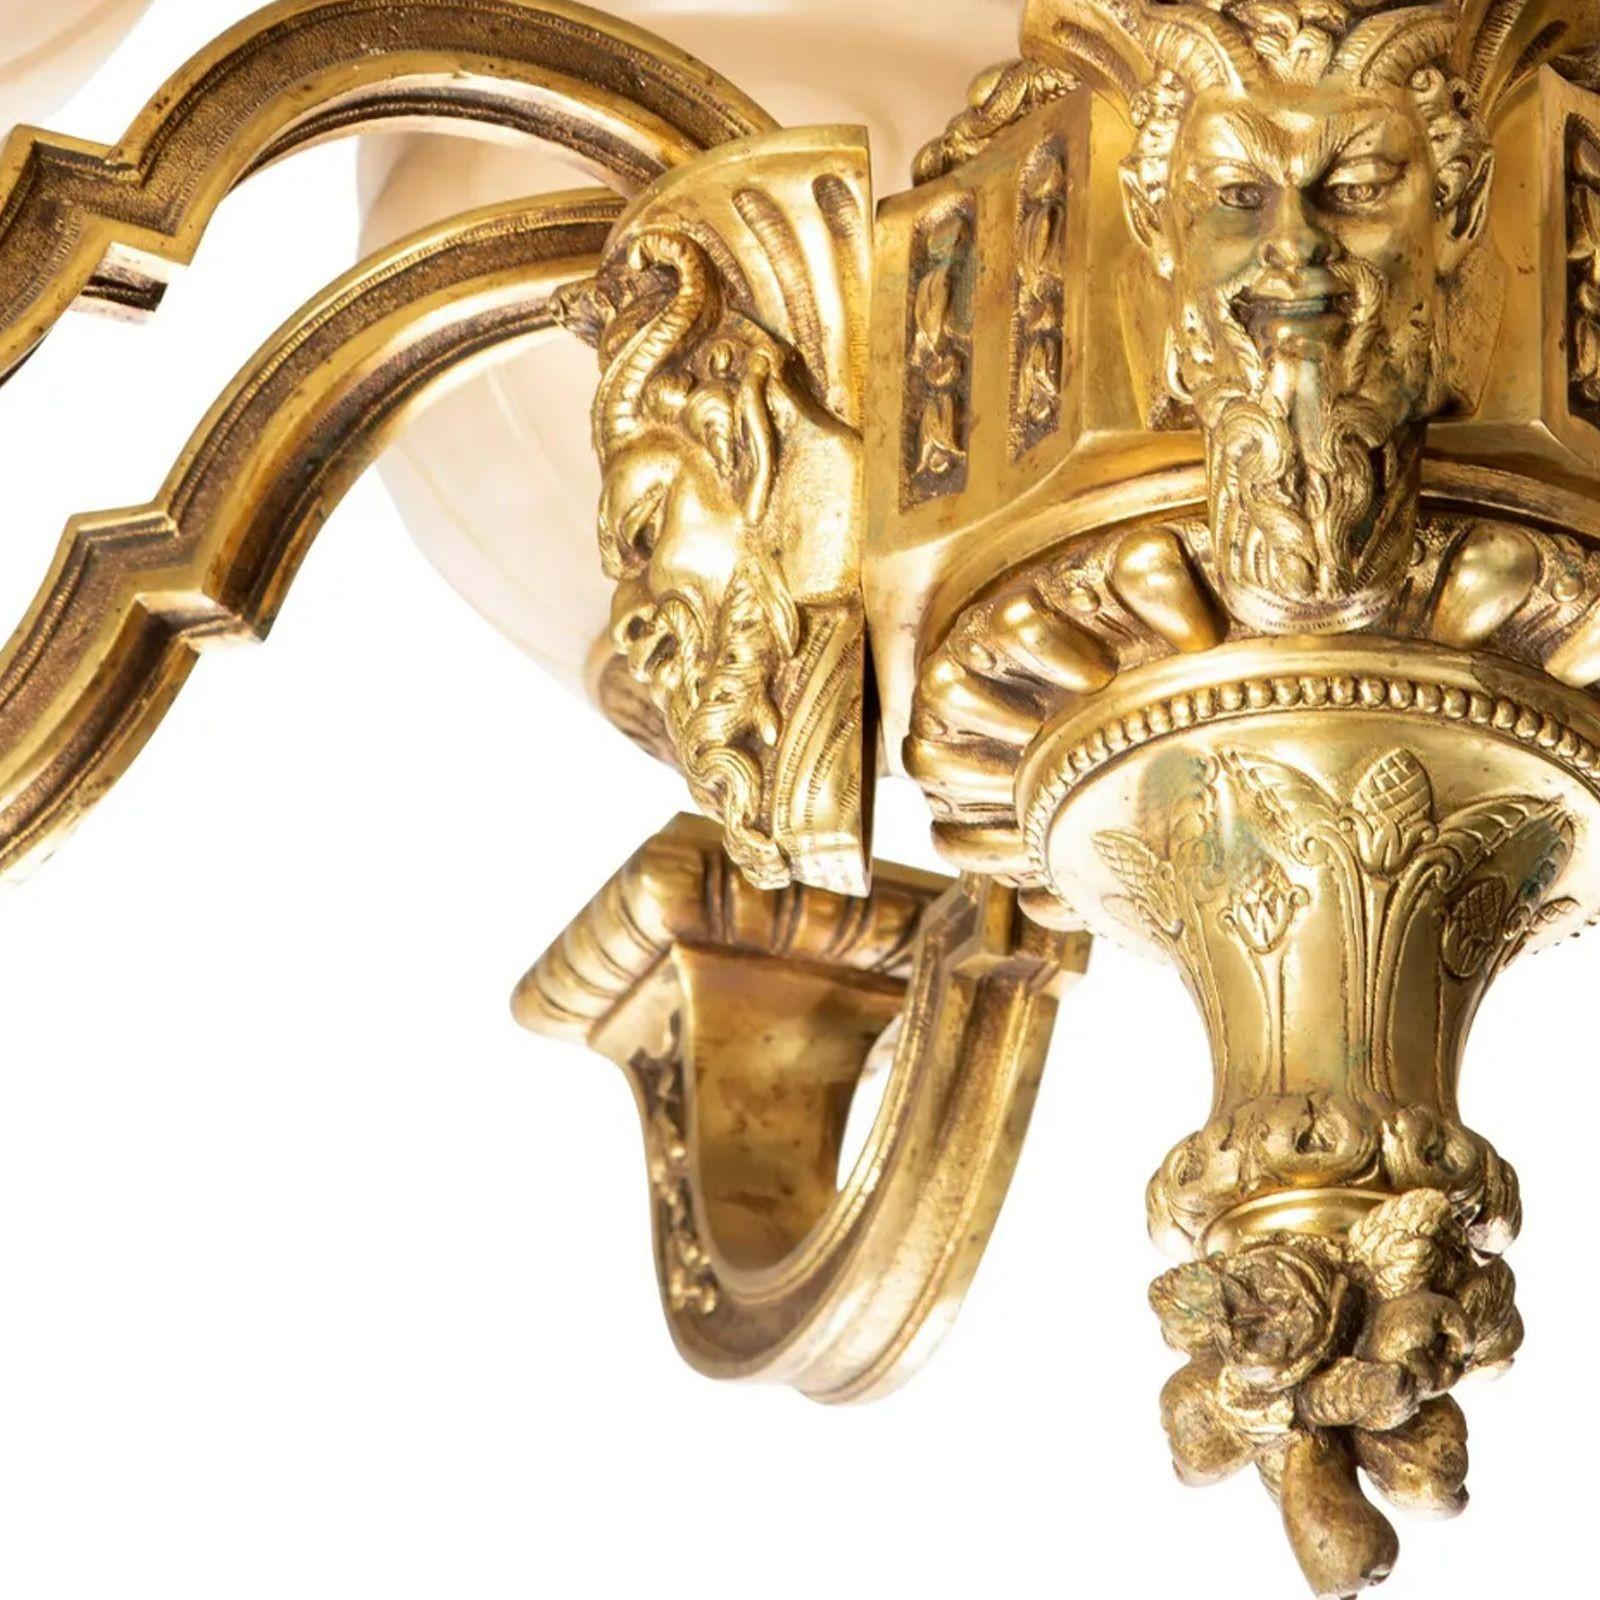 Vergoldeter Bronze-Kronleuchter aus dem späten 19.
 
Achtflammiger Kronleuchter aus vergoldeter Bronze, umgeben von Armen, die an einer Wasserspeiermaske befestigt sind, und mit acht geschnitzten Alabaster-/Marmorschirmen, elektrifiziert.
33.5